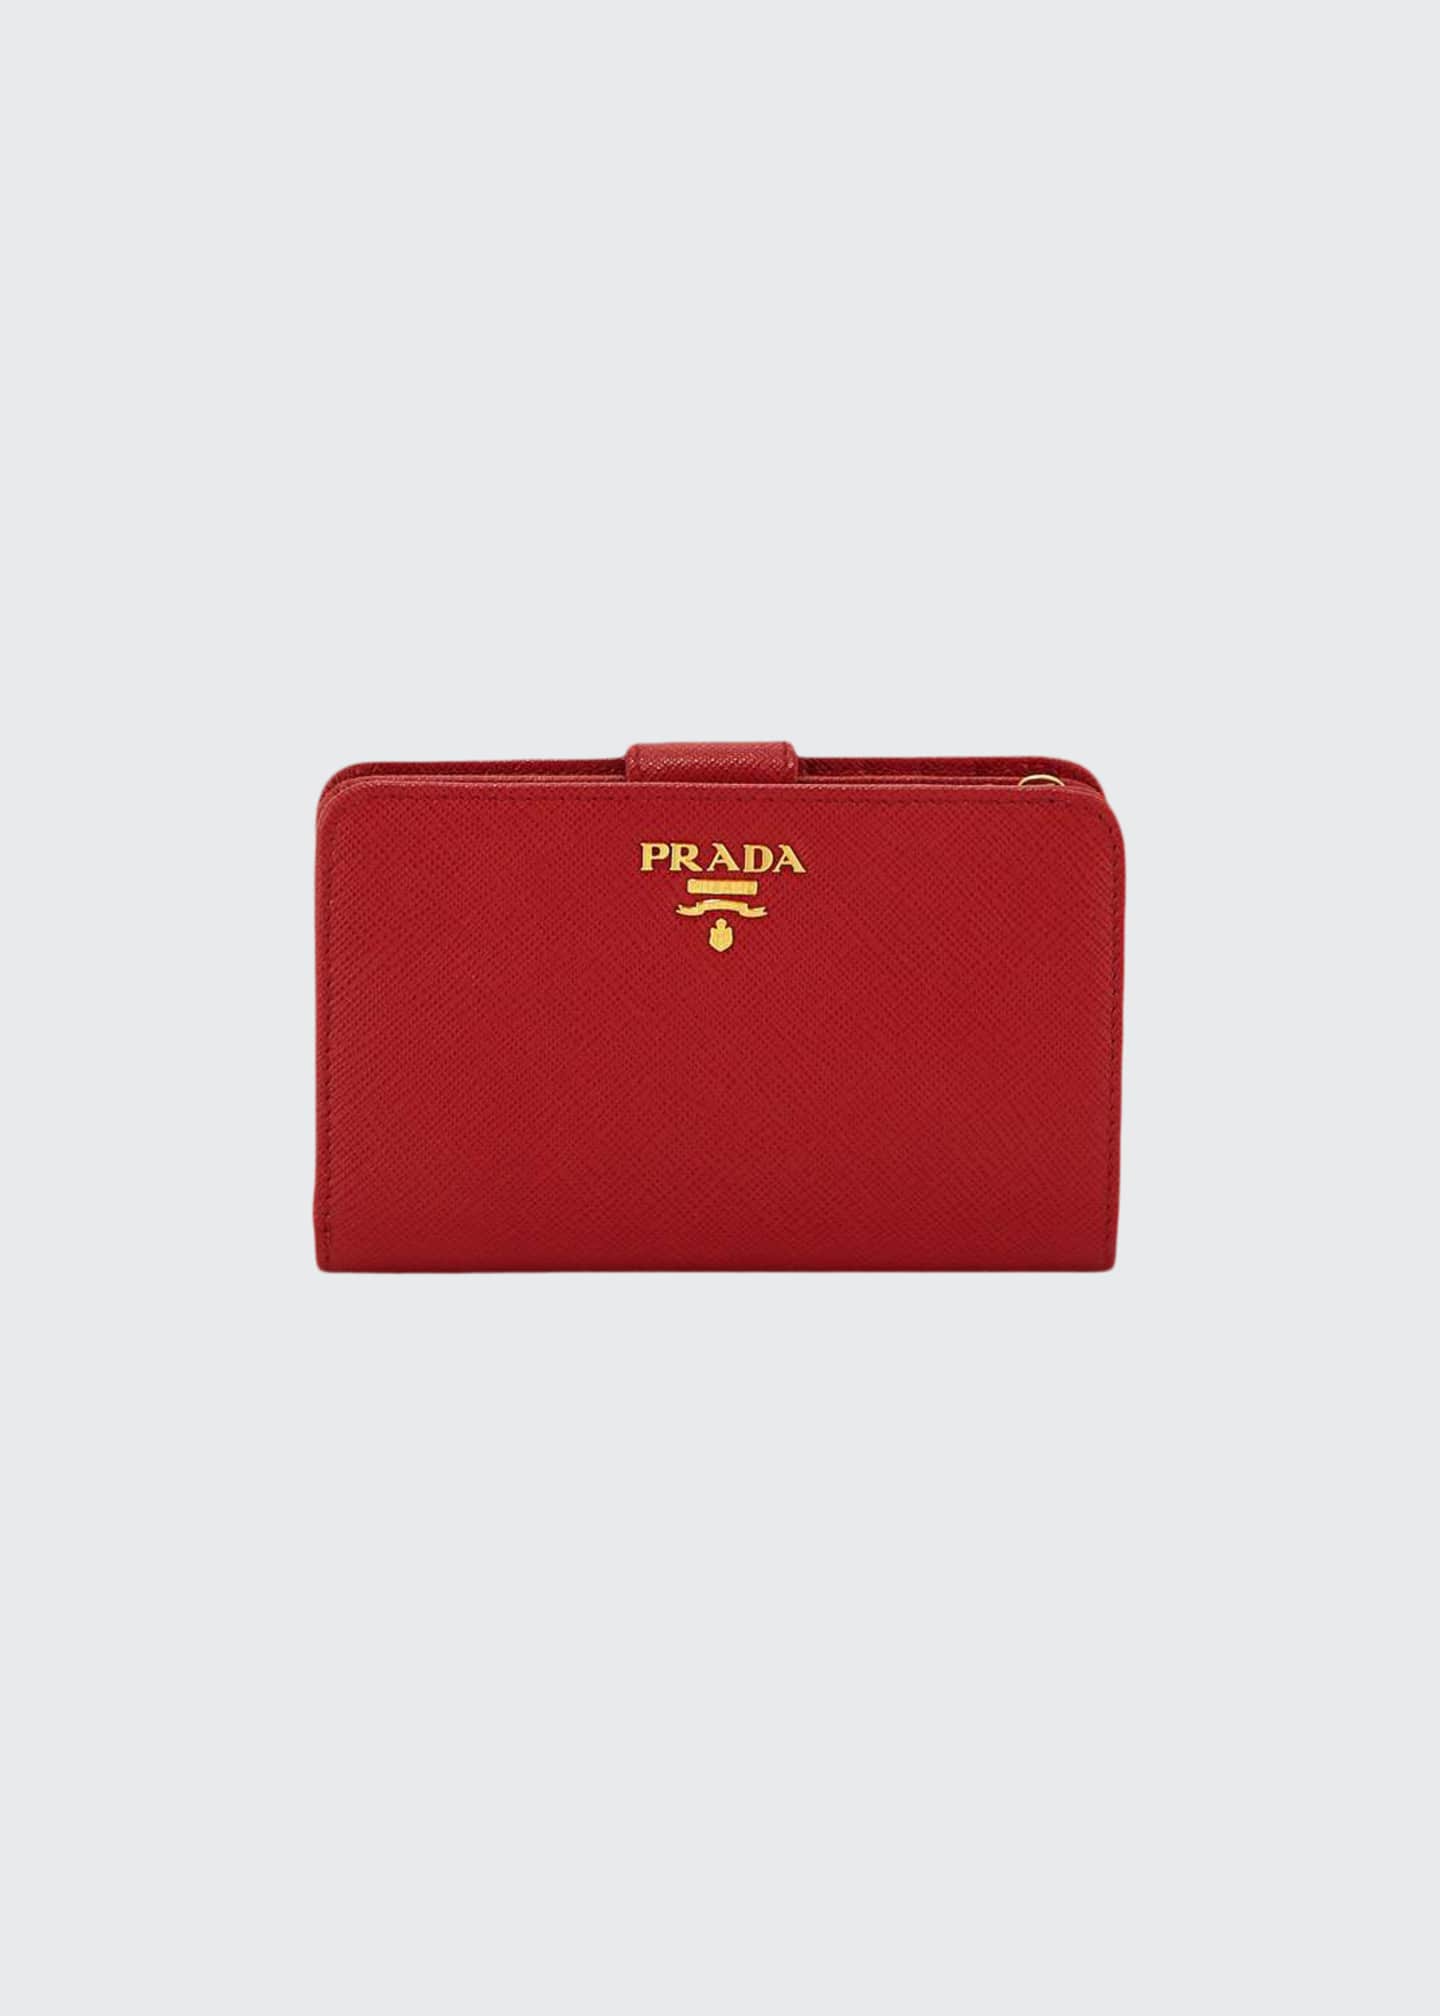 prada medium saffiano tab wallet